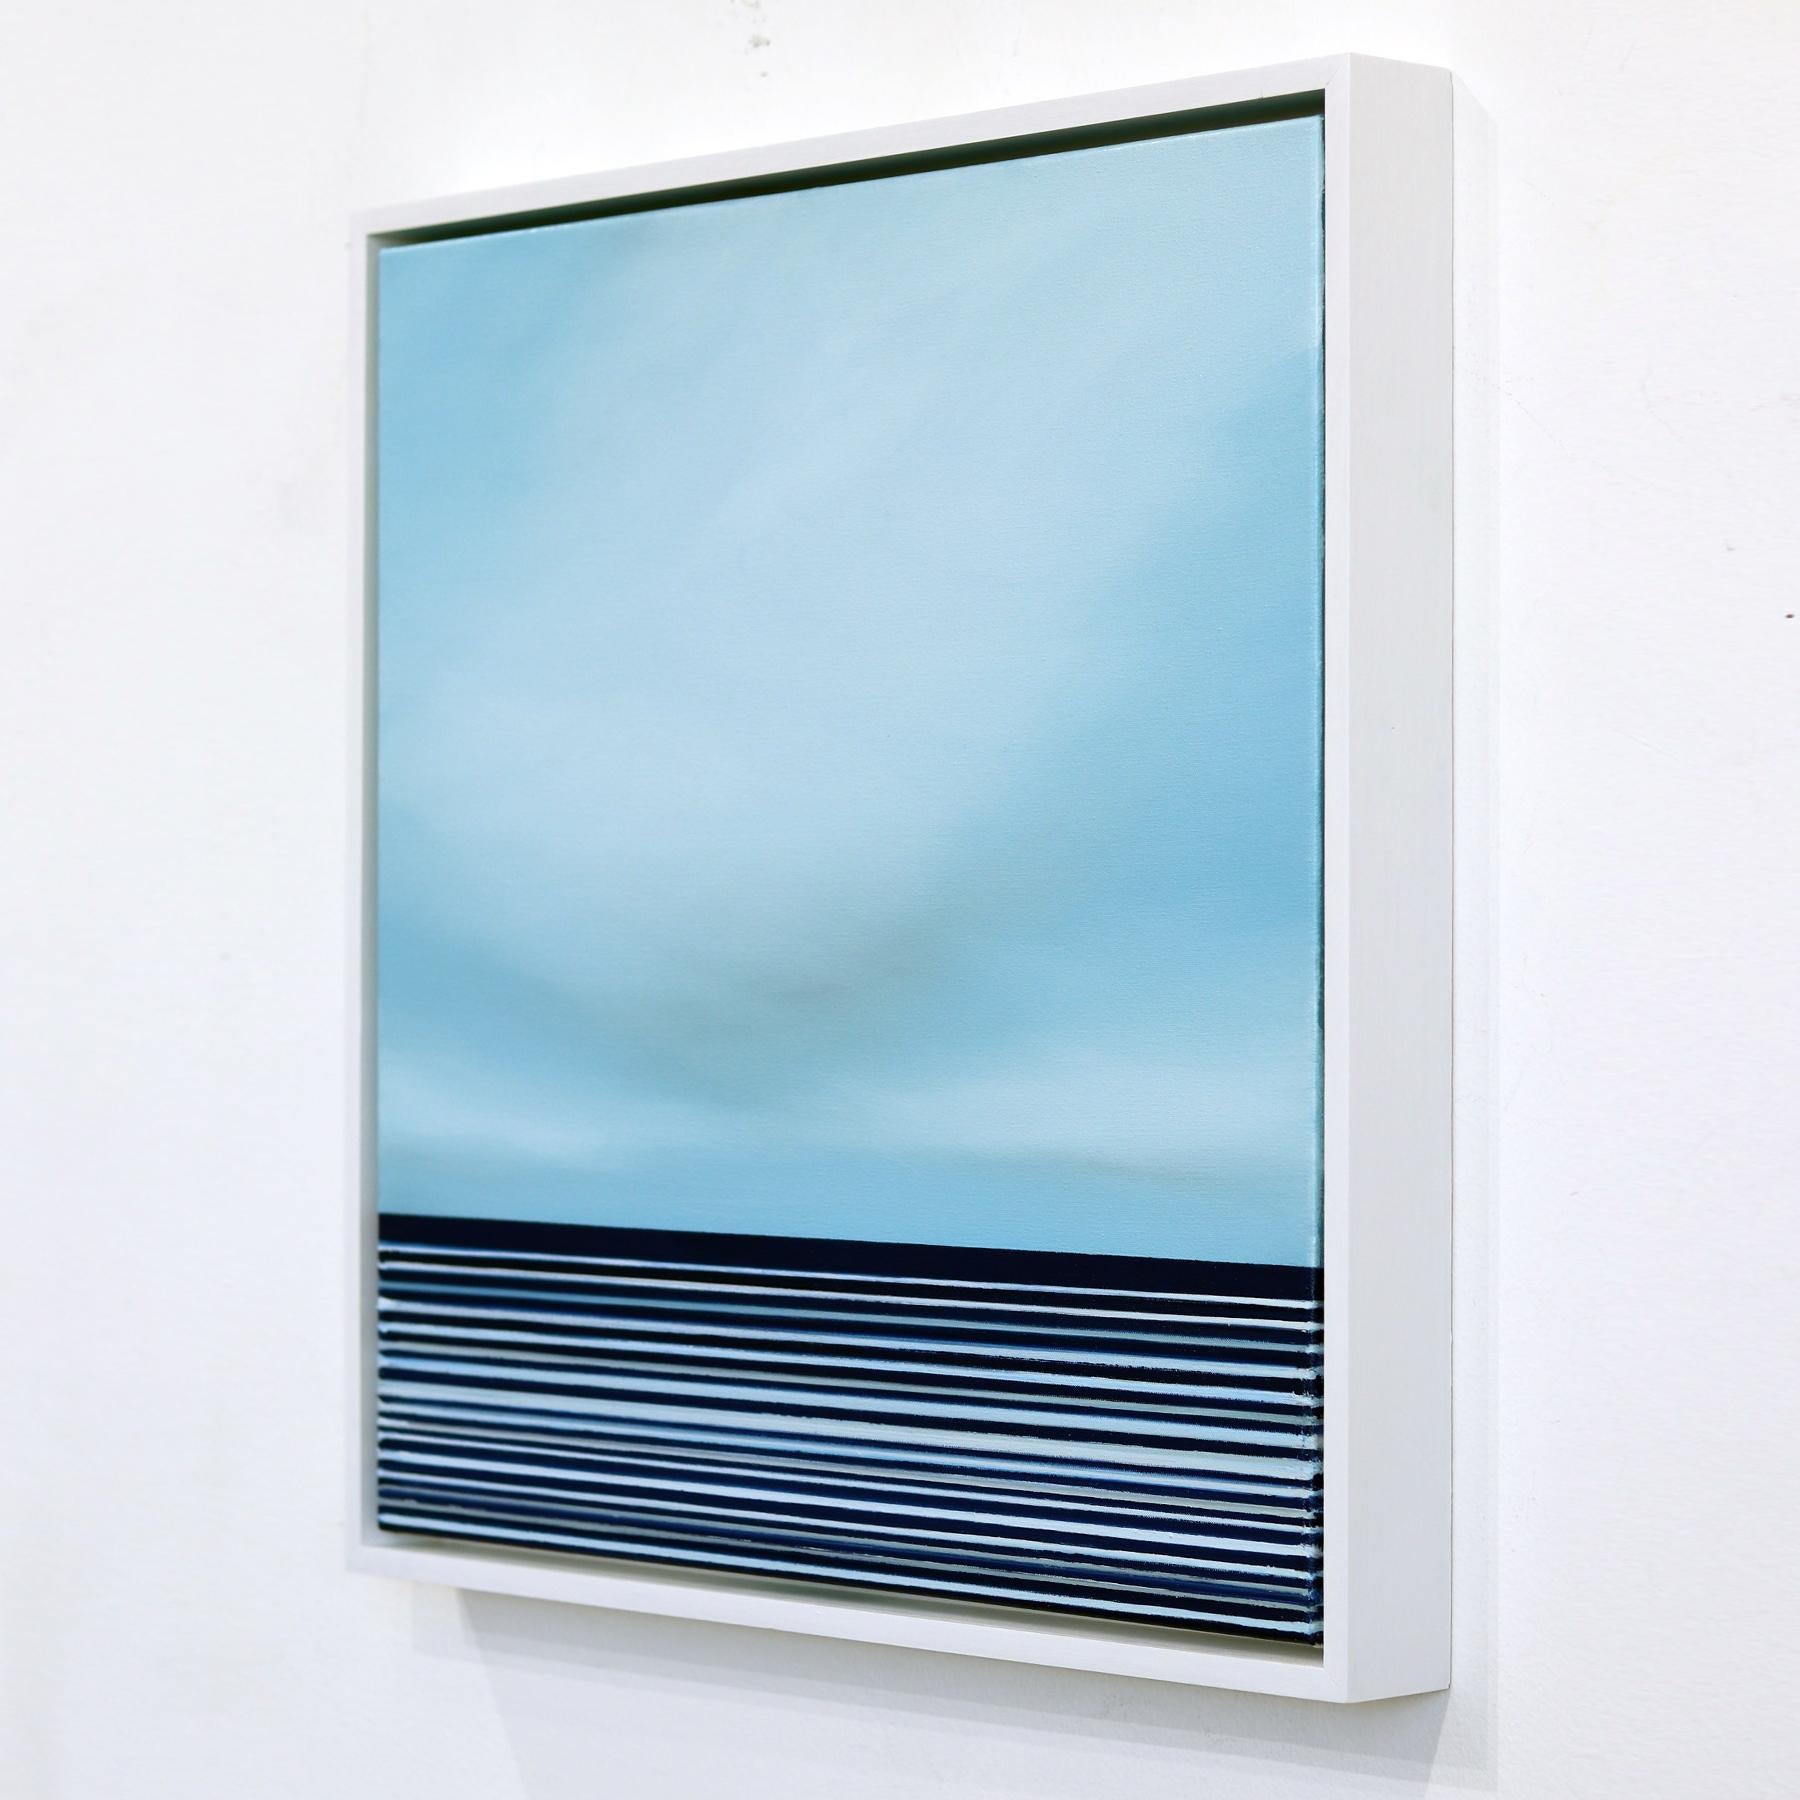 Cette superbe œuvre d'art de Jeremy Prim est un chef-d'œuvre minimaliste qui respire la tranquillité et capture l'essence du littoral du Pacifique. Le tableau présente une palette de couleurs bleues sereines qui évoquent un sentiment de calme et de